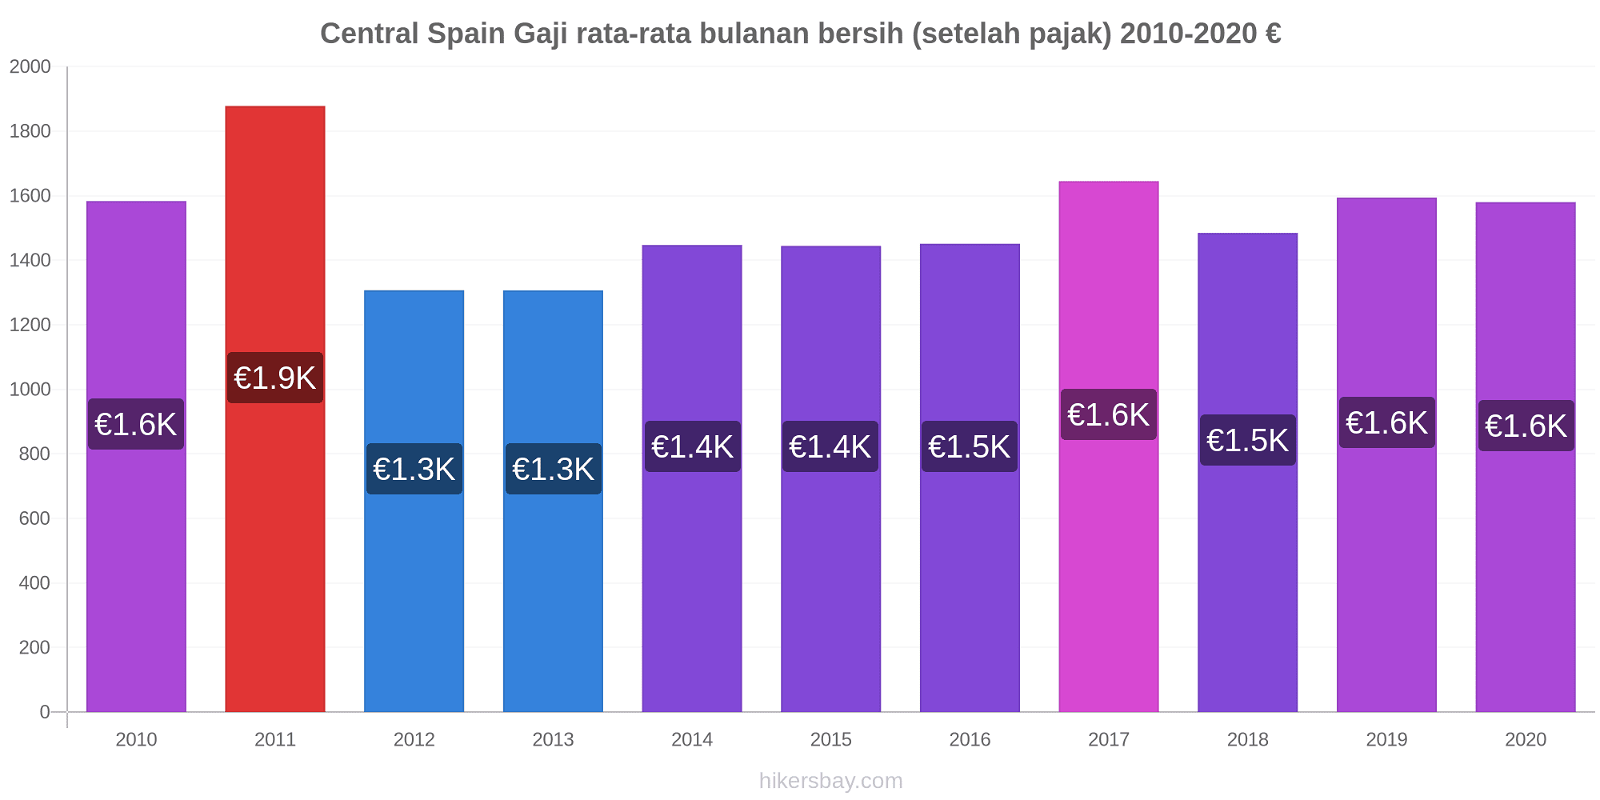 Central Spain perubahan harga Gaji rata-rata bulanan bersih (setelah pajak) hikersbay.com